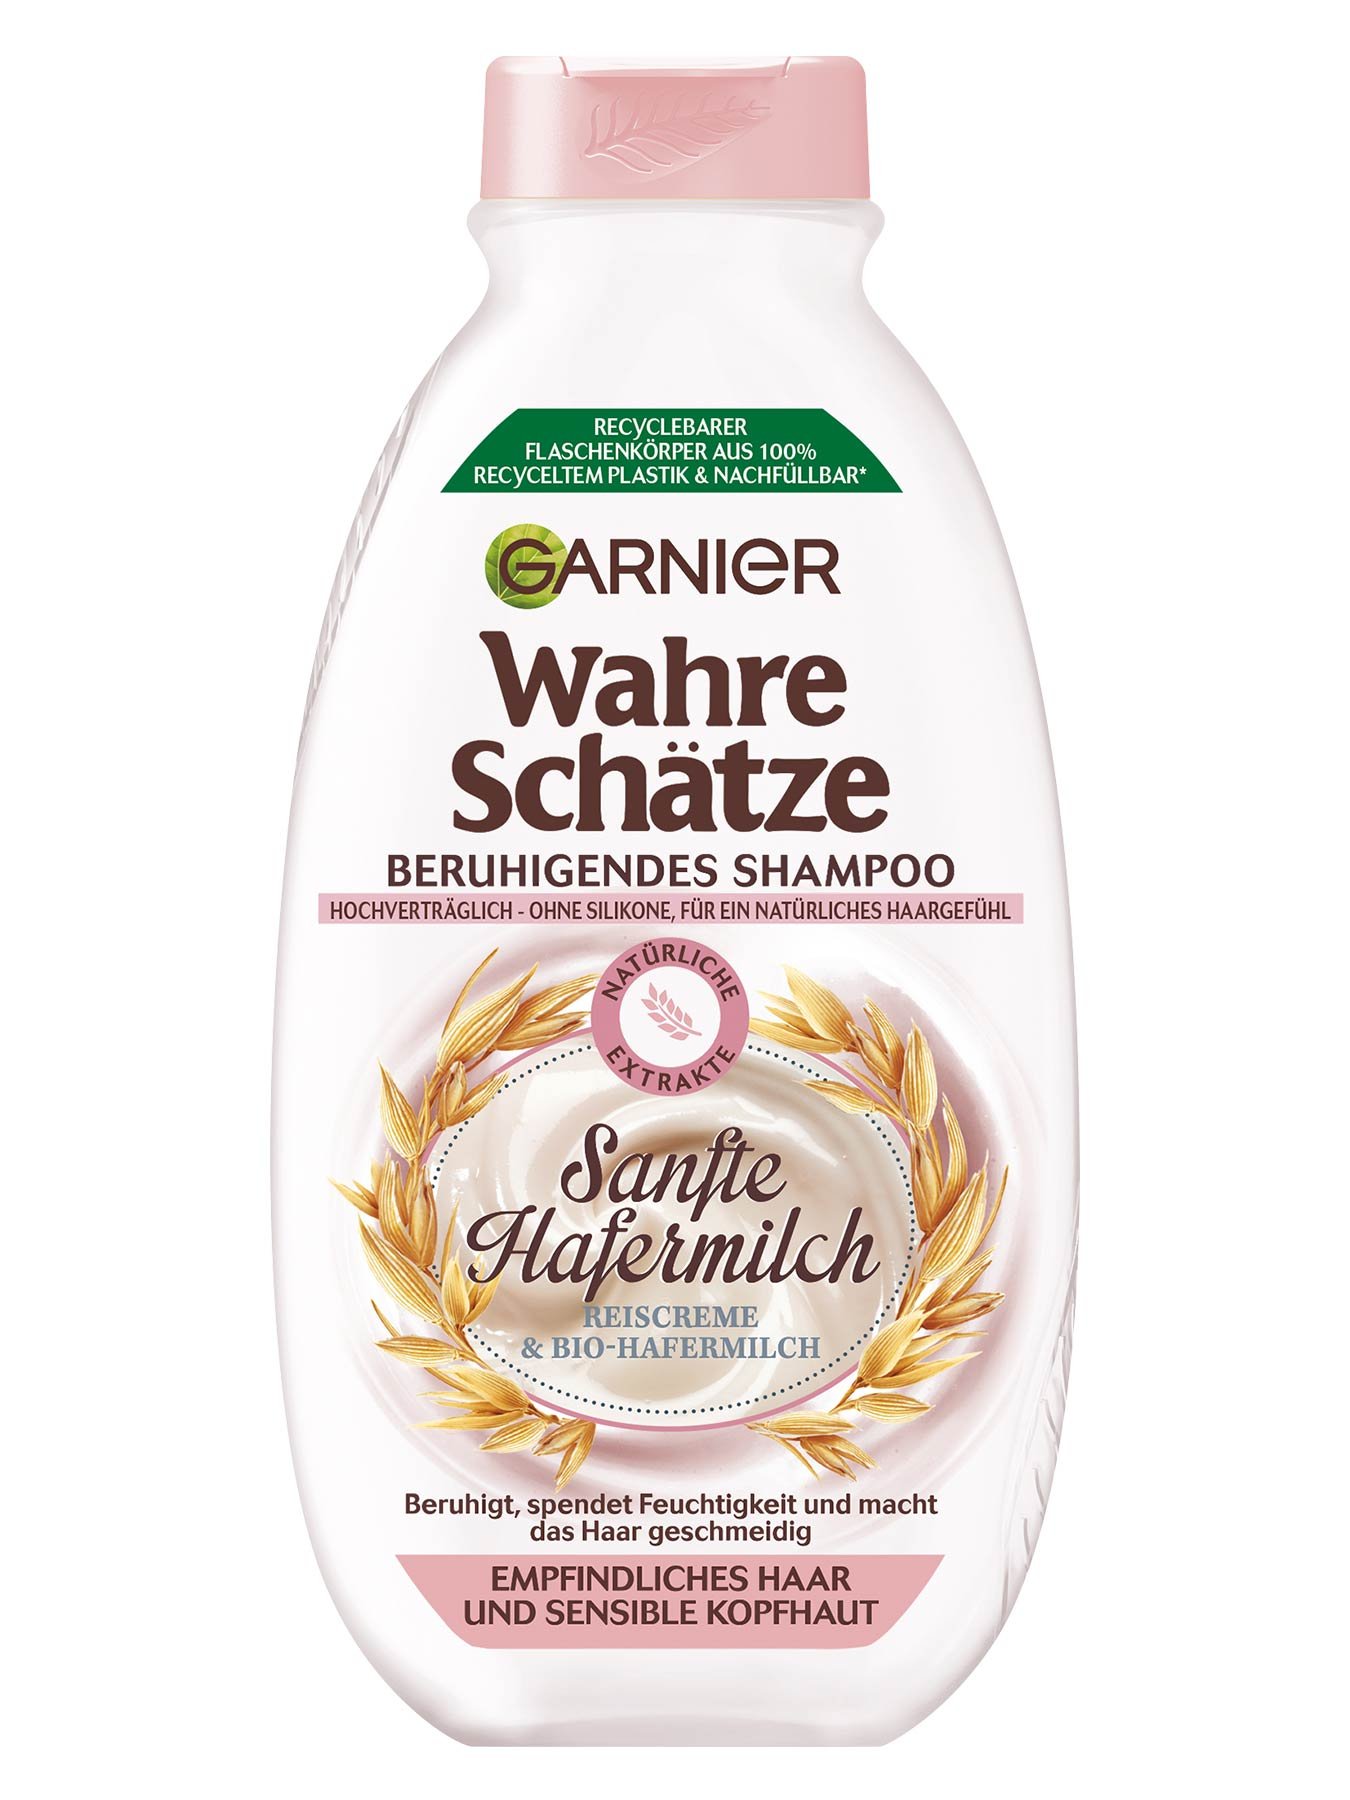 Wahre Schätze Beruhigendes Shampoo Sanfte Hafermilch - Produktabbildung